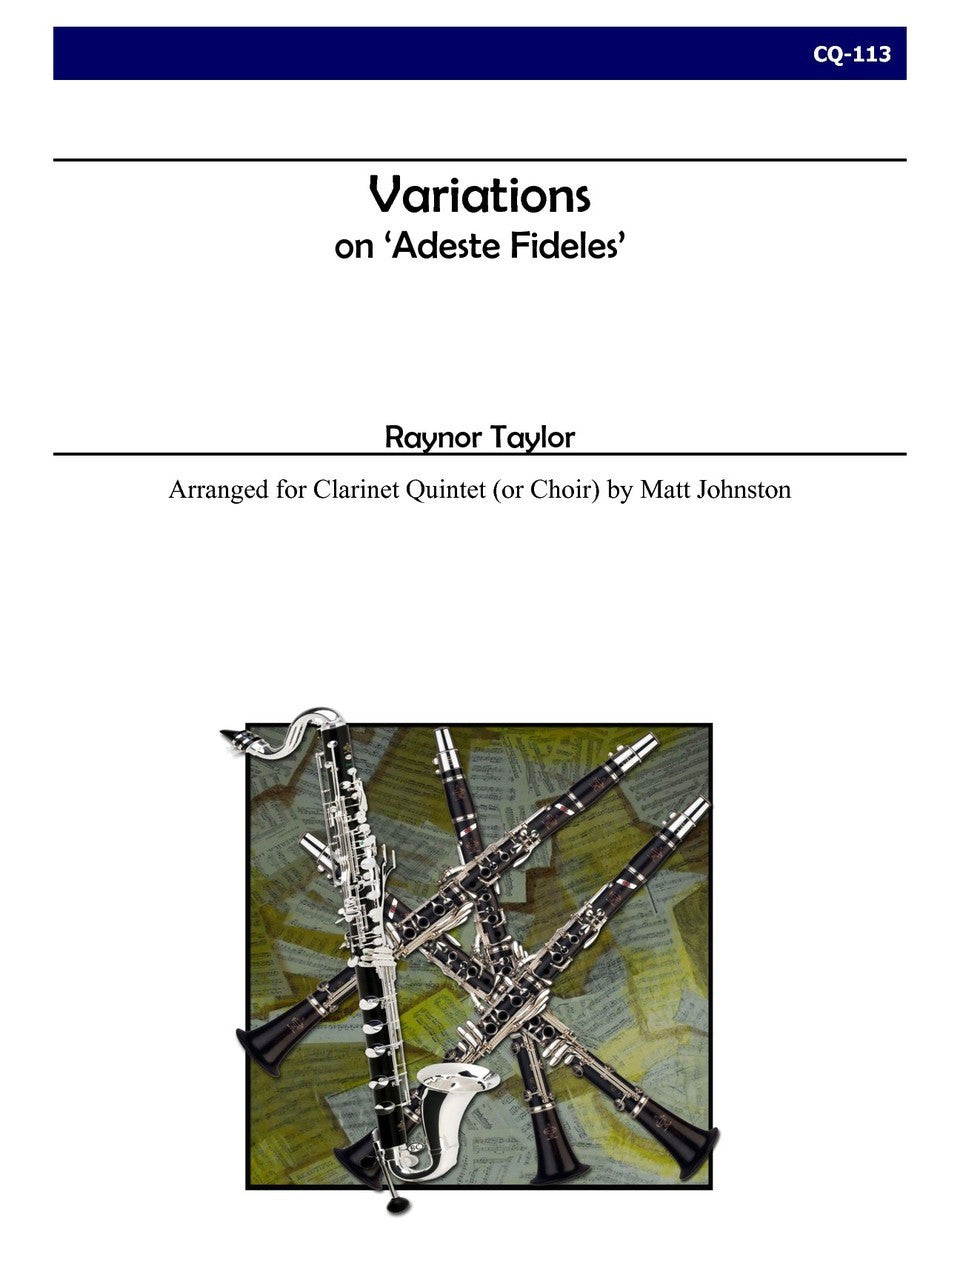 Taylor (Matt Johnston) - Variations on ‘Adeste Fideles’ for Clarinet Quintet